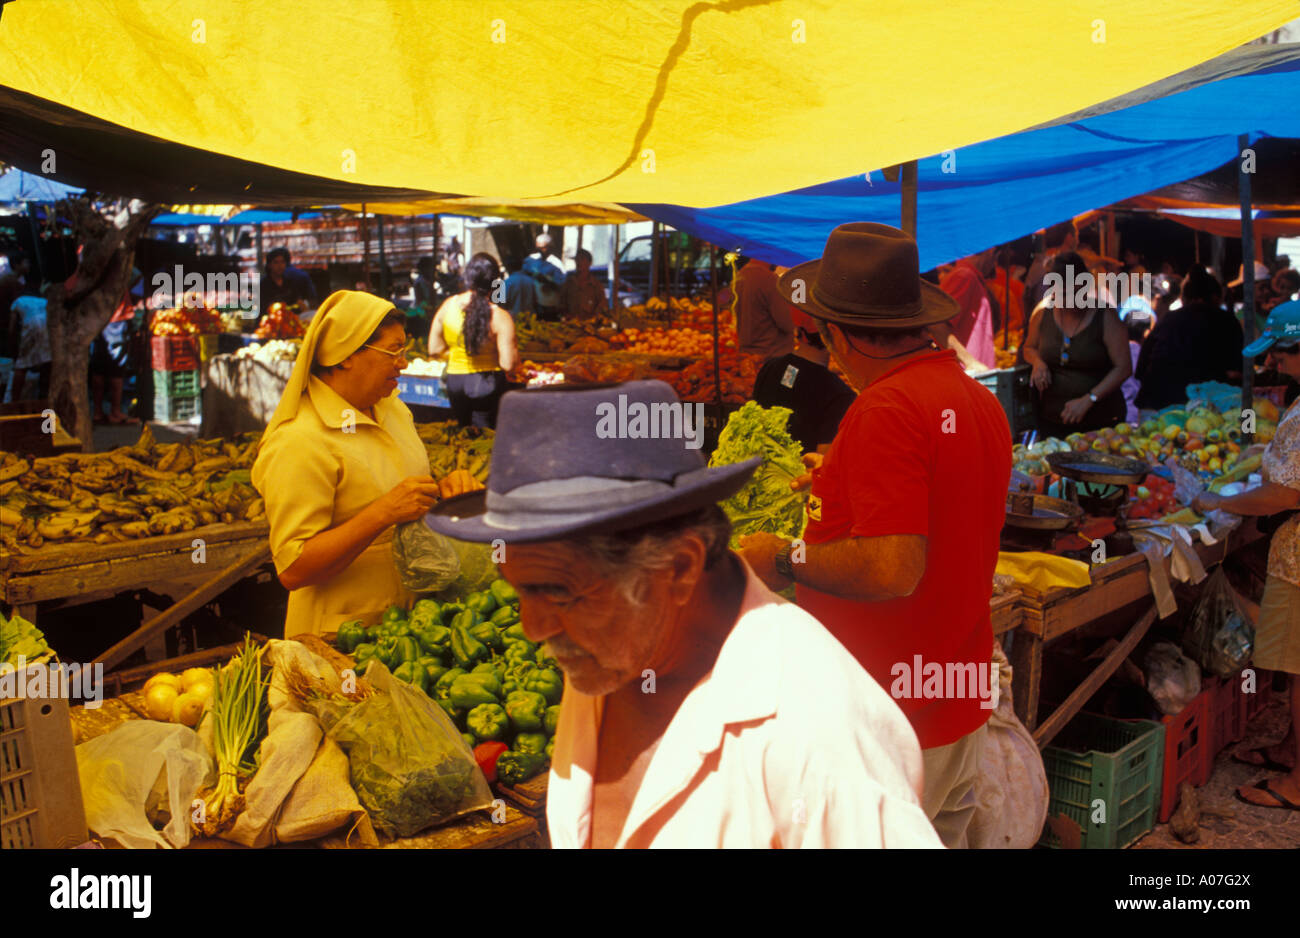 Street Market, Lebensmittel zum Verkauf (Gemüse, Obst) - populäre Commerce für einkommensschwache Kunden häufig bei kleinen Städte im Nordosten Brasiliens. Stockfoto